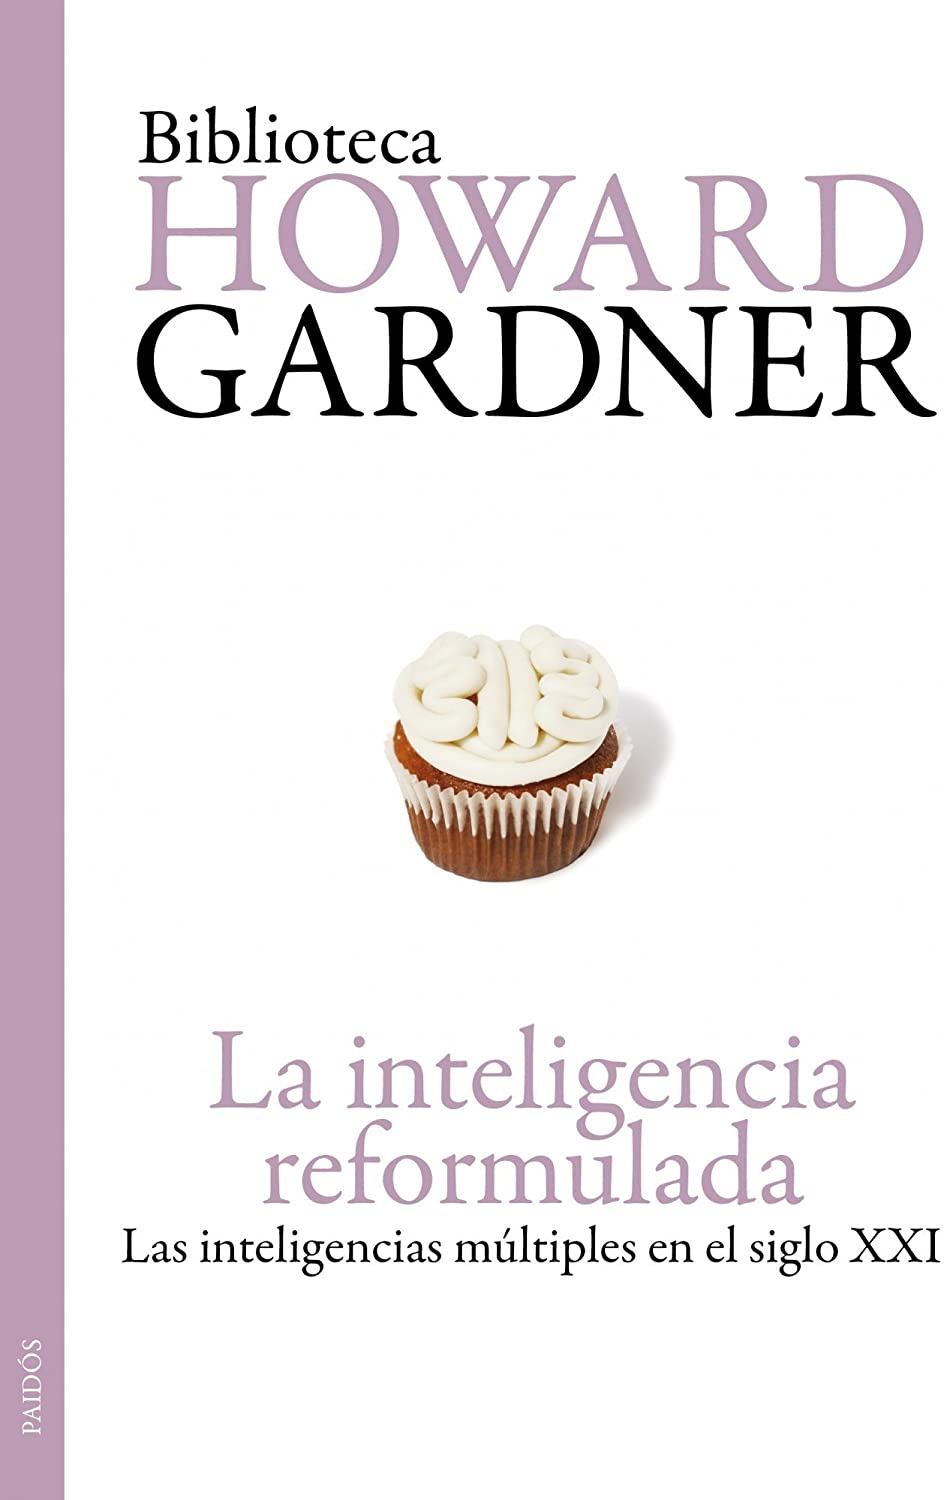 La inteligencia reformulada: Las inteligencias m&uacute;ltiples en el siglo XXI (Biblioteca Howard Gardner) (Spanish Edition)